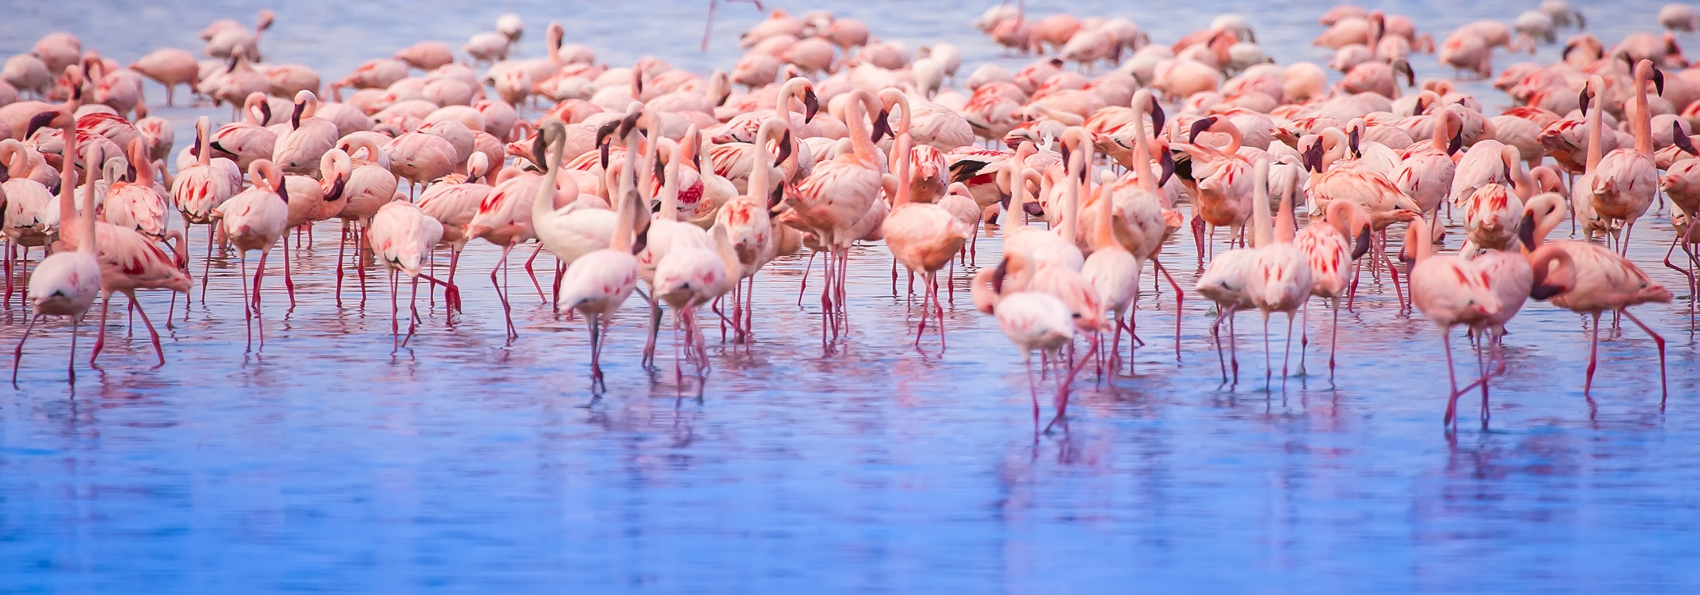 kenya_nakuru_flamingo_01